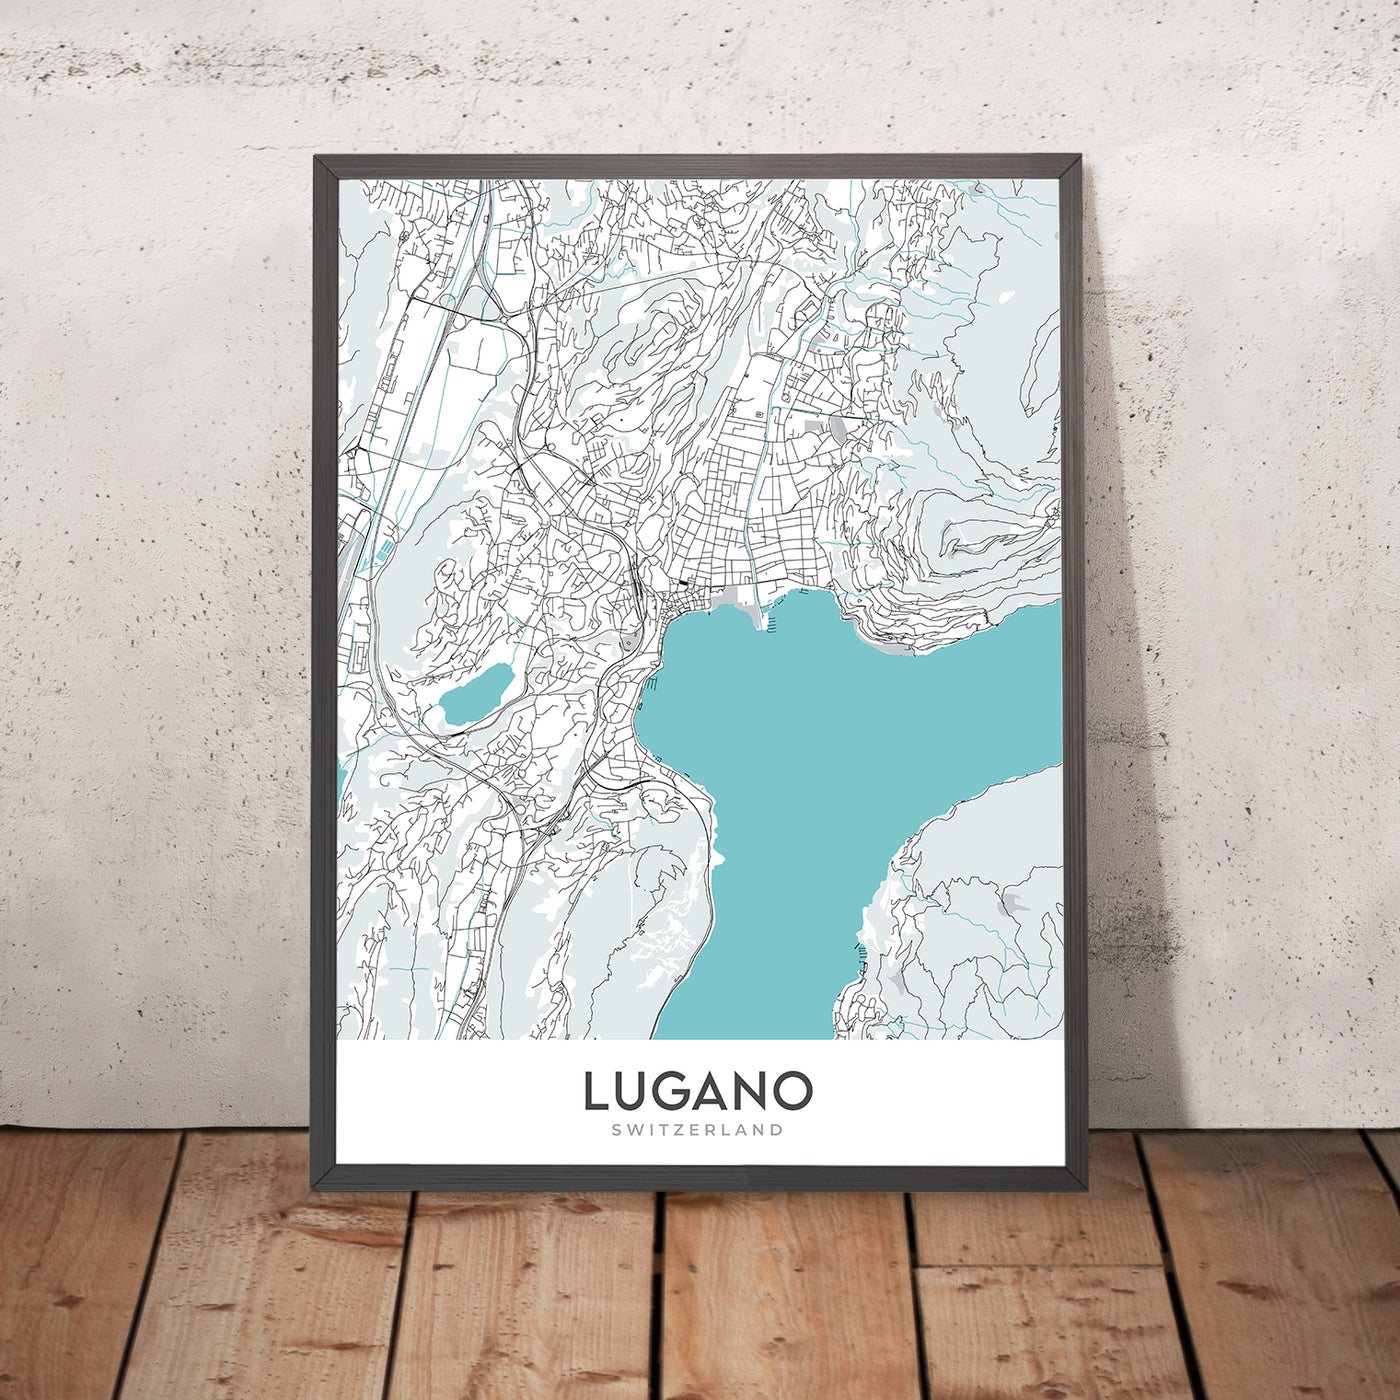 Moderner Stadtplan von Lugano, Schweiz: Luganersee, Monte Brè, Monte San Salvatore, Swissminiatur, Kathedrale San Lorenzo